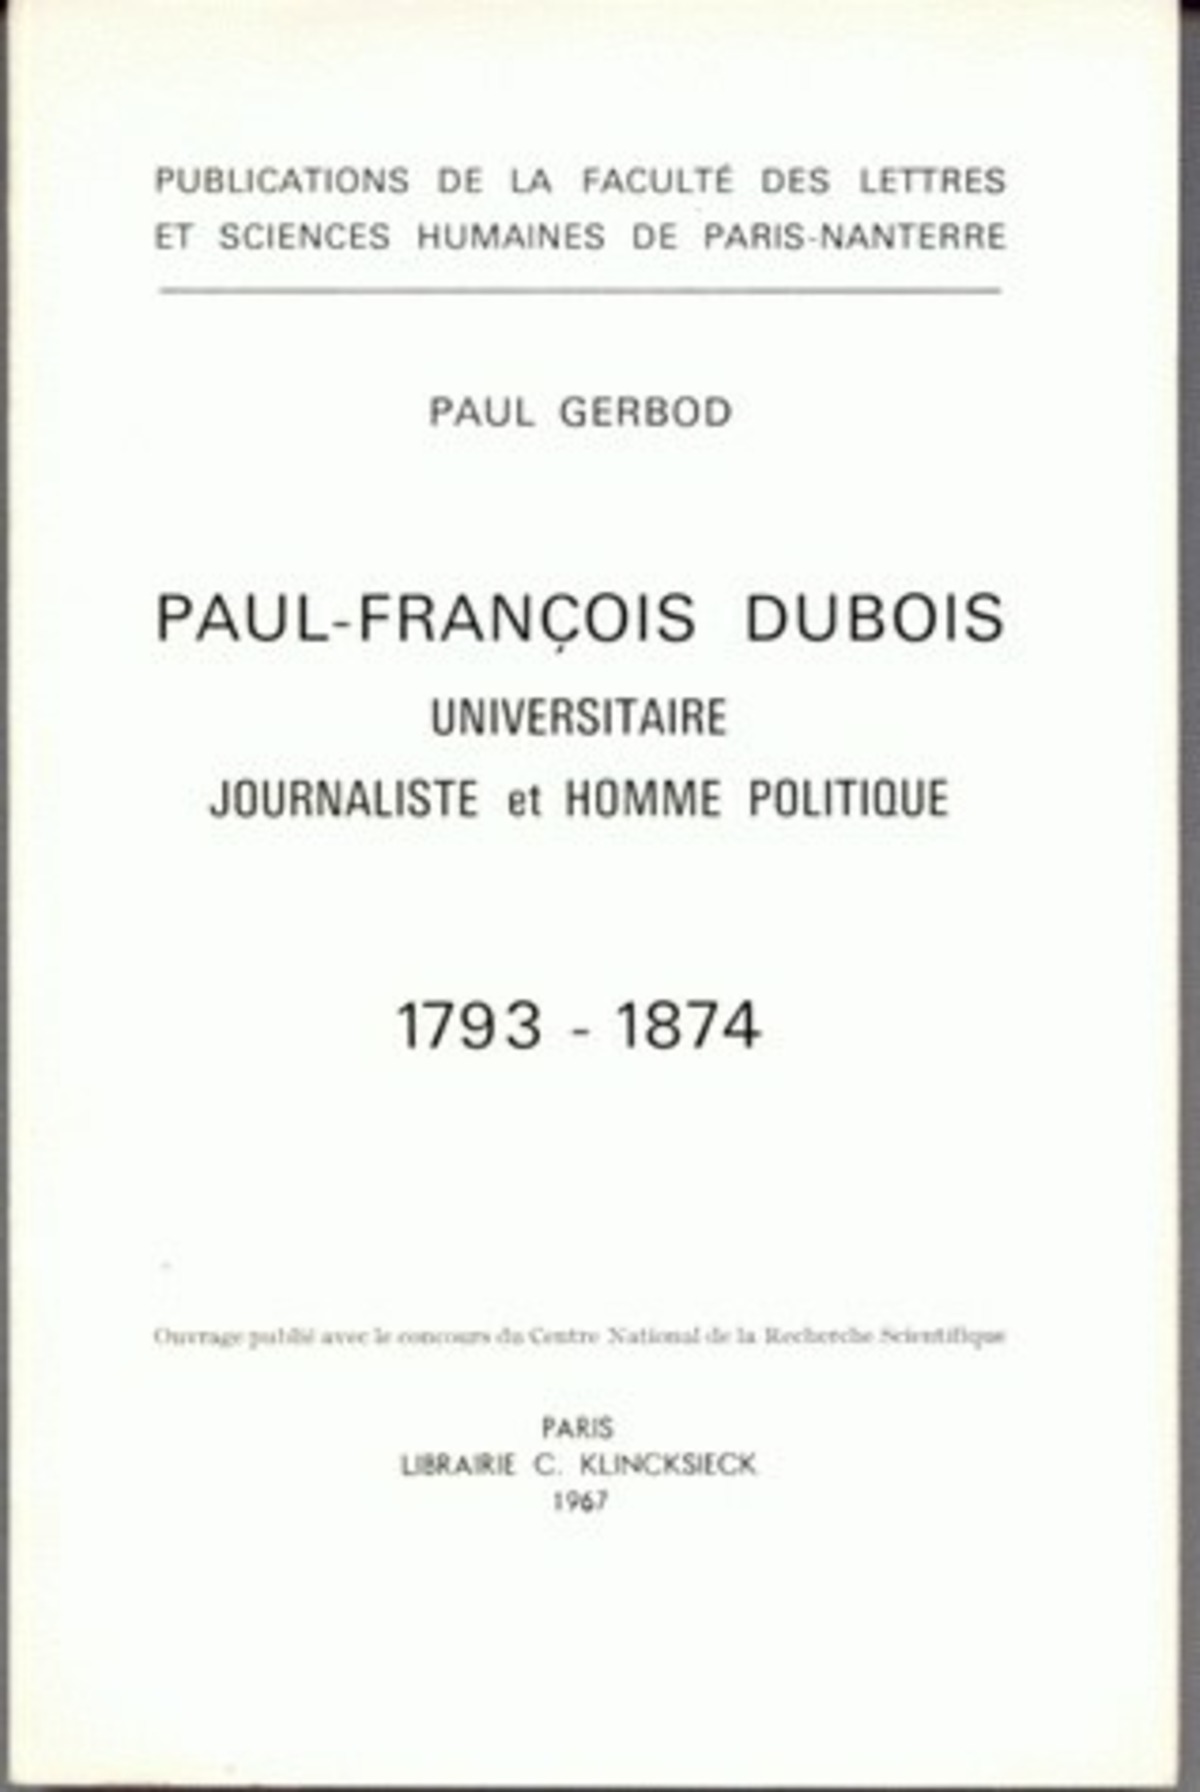 Paul-François Dubois (1793-1874), universitaire, journaliste et homme politique